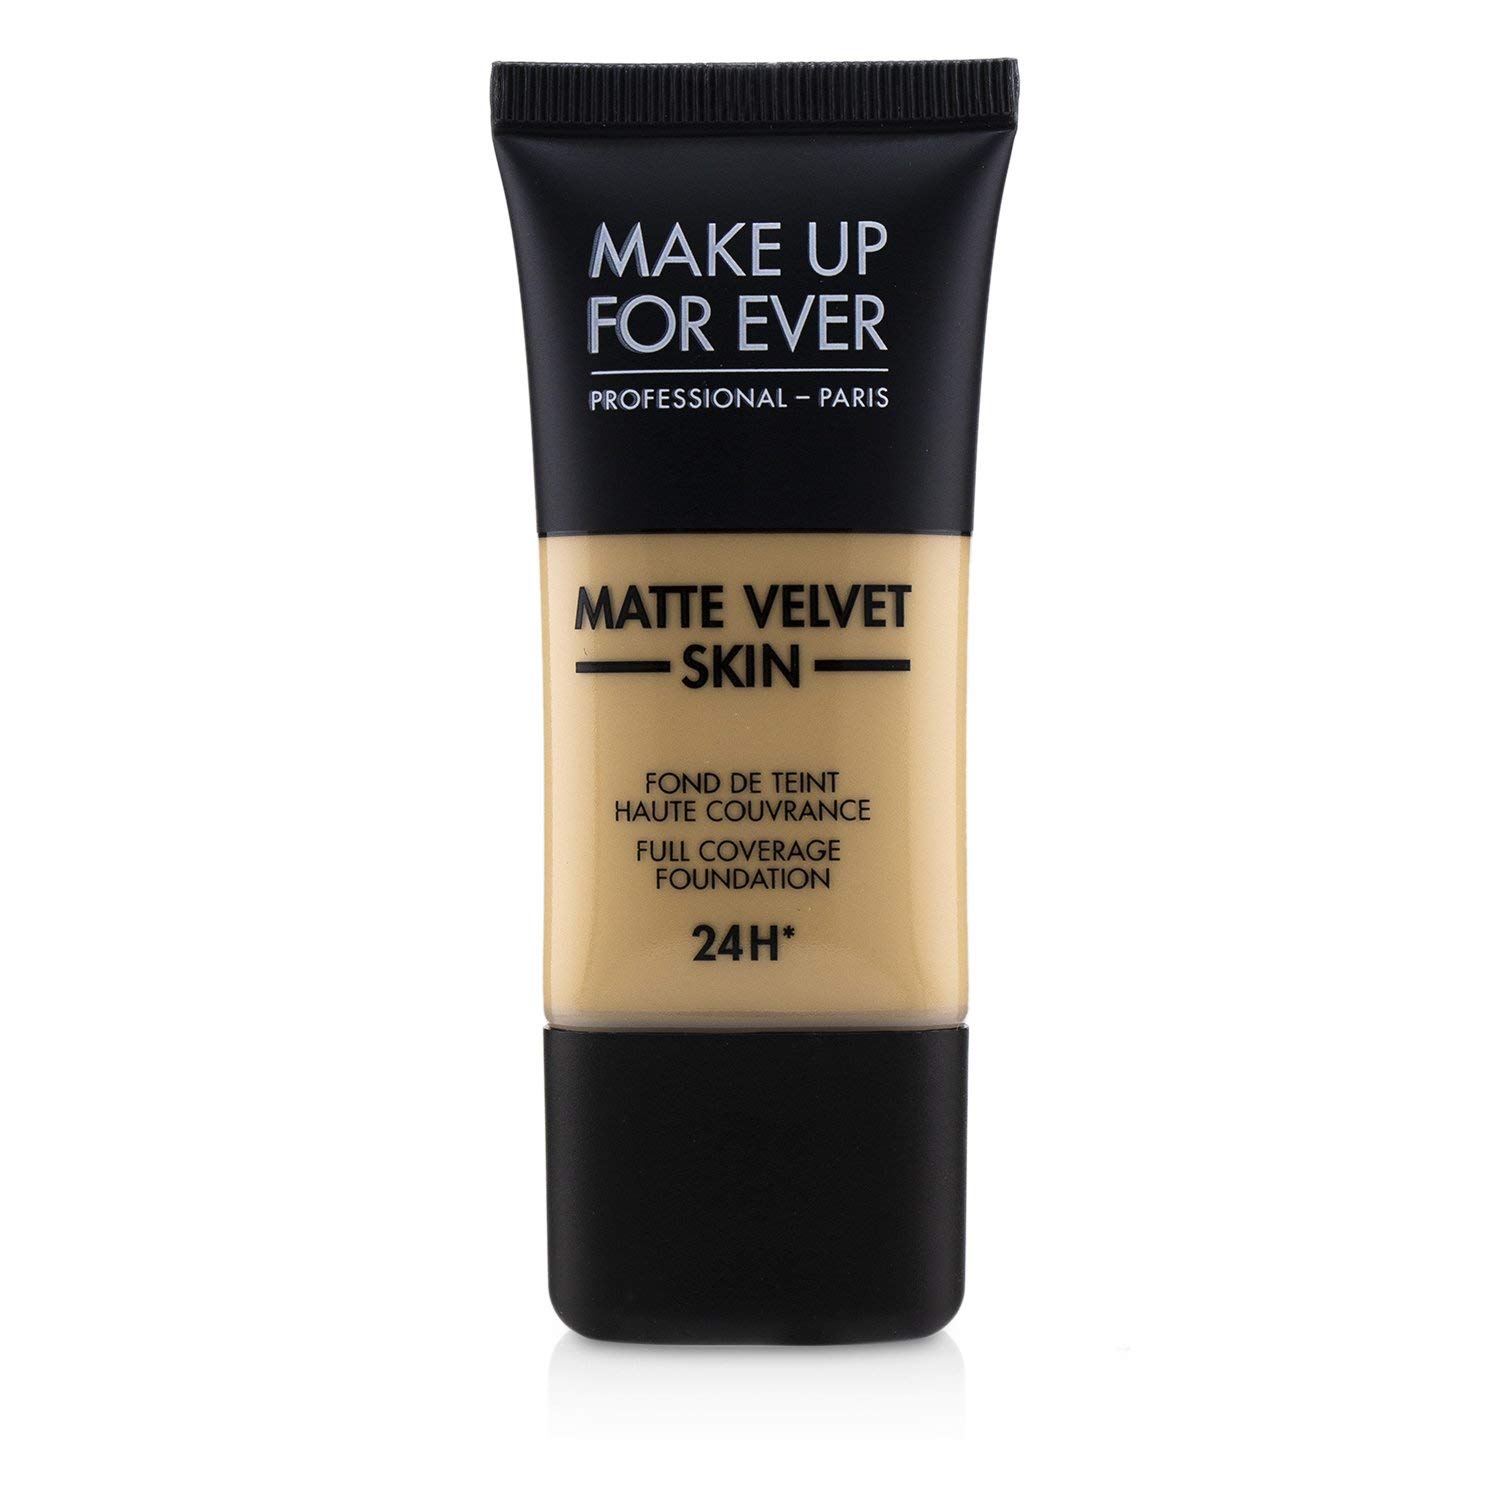 MAKE UP FOR EVER Matte Velvet Skin Full Coverage Foundation Y245 - SOFT SAND 1.01 oz/ 30 mL